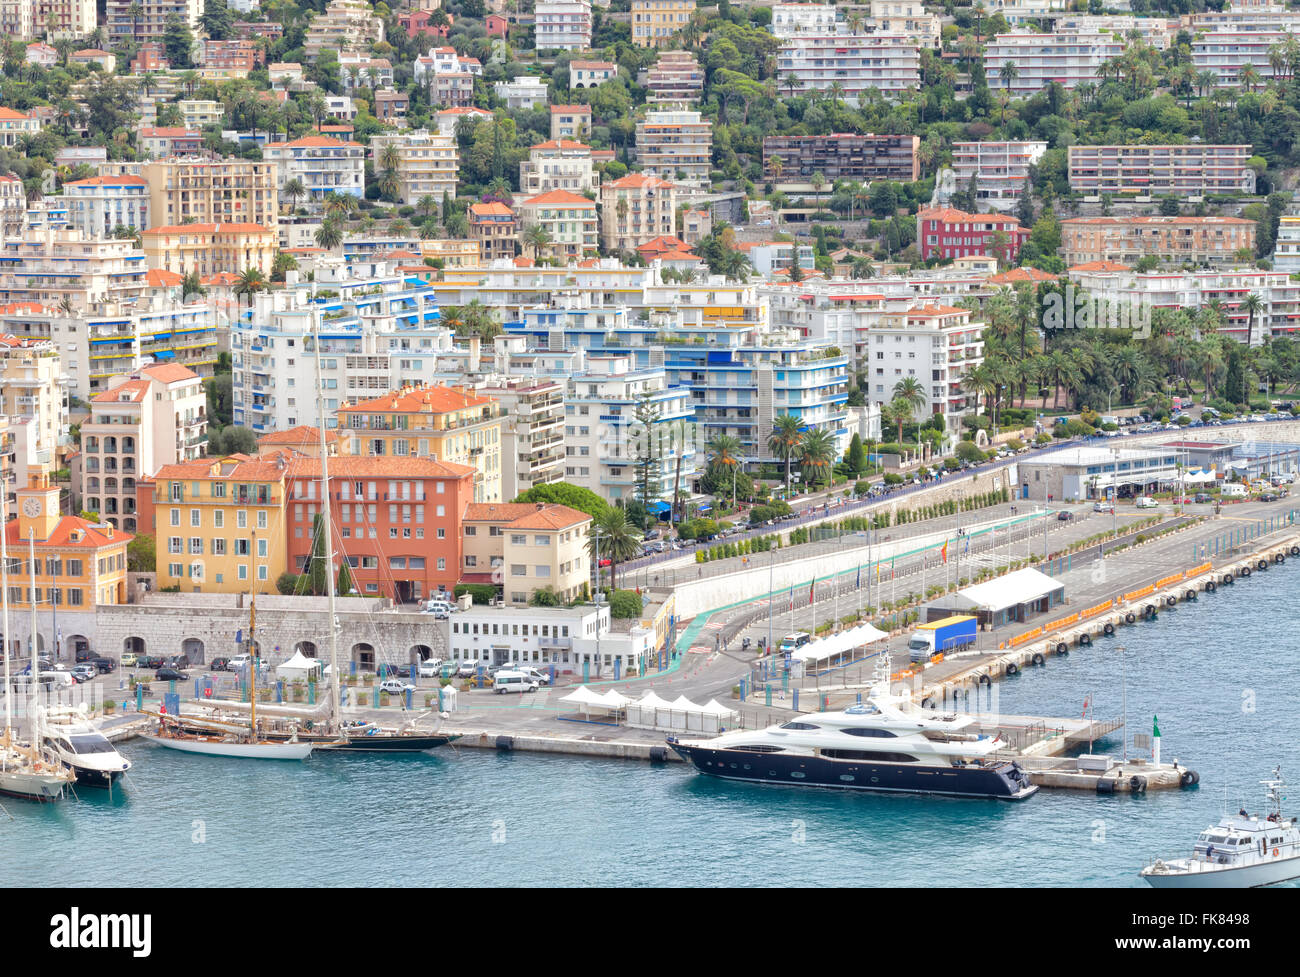 Stadtbild von französischen Mittelmeer Meer Hafen von Nizza mit super-Yachten, Segelboote im Hafen, Villen mit tropischen Gärten Stockfoto